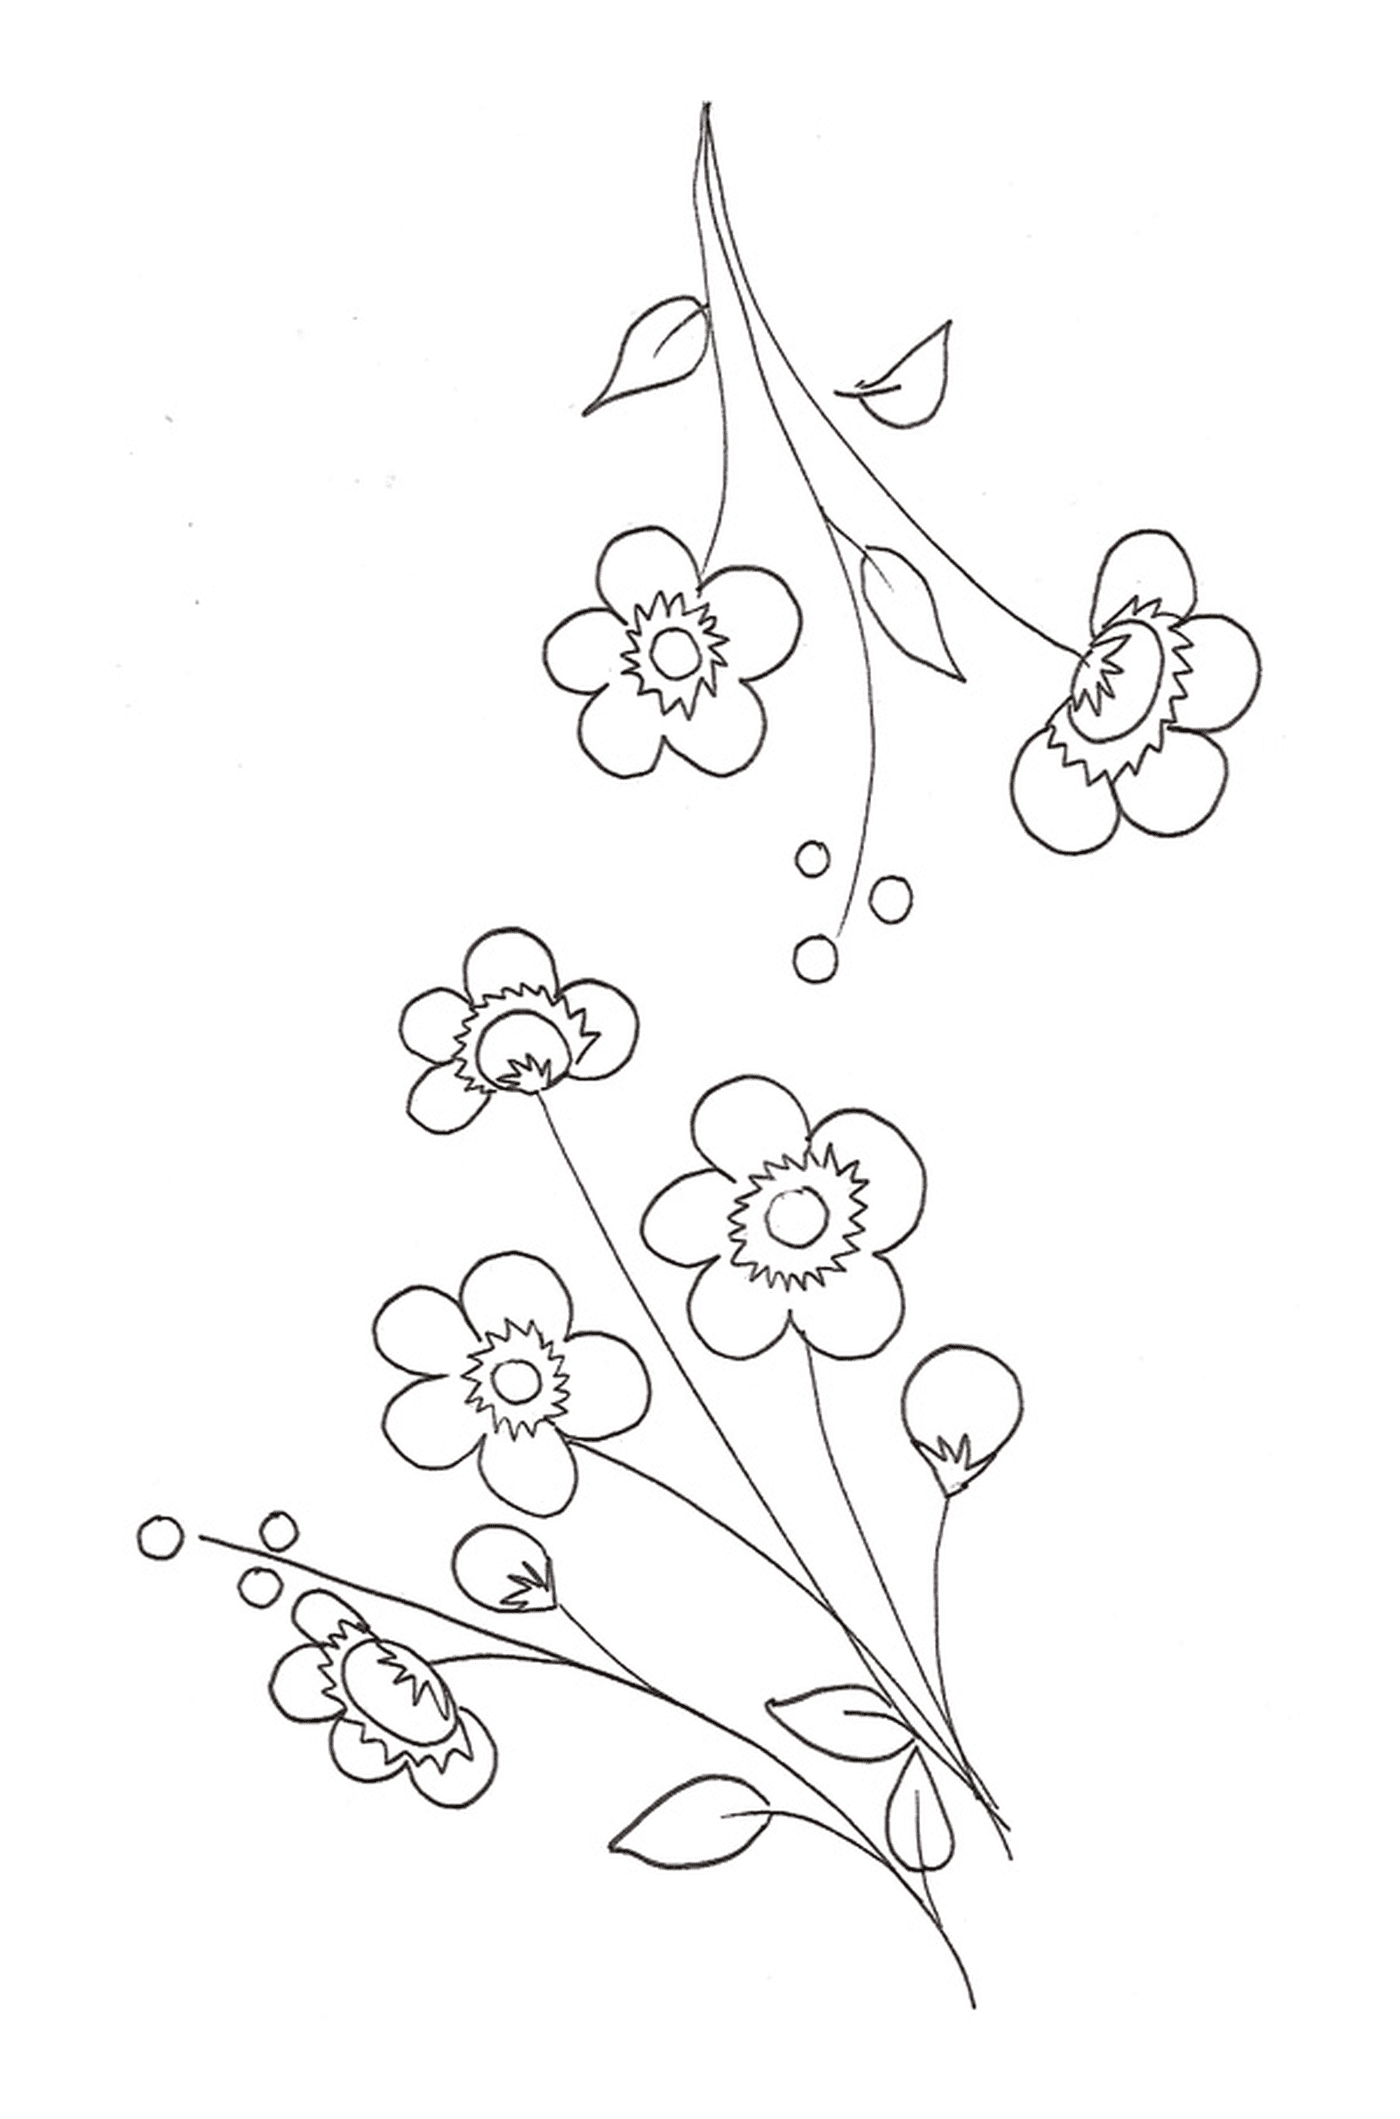  Uma flor de cerejeira em uma linha com um grupo de flores 